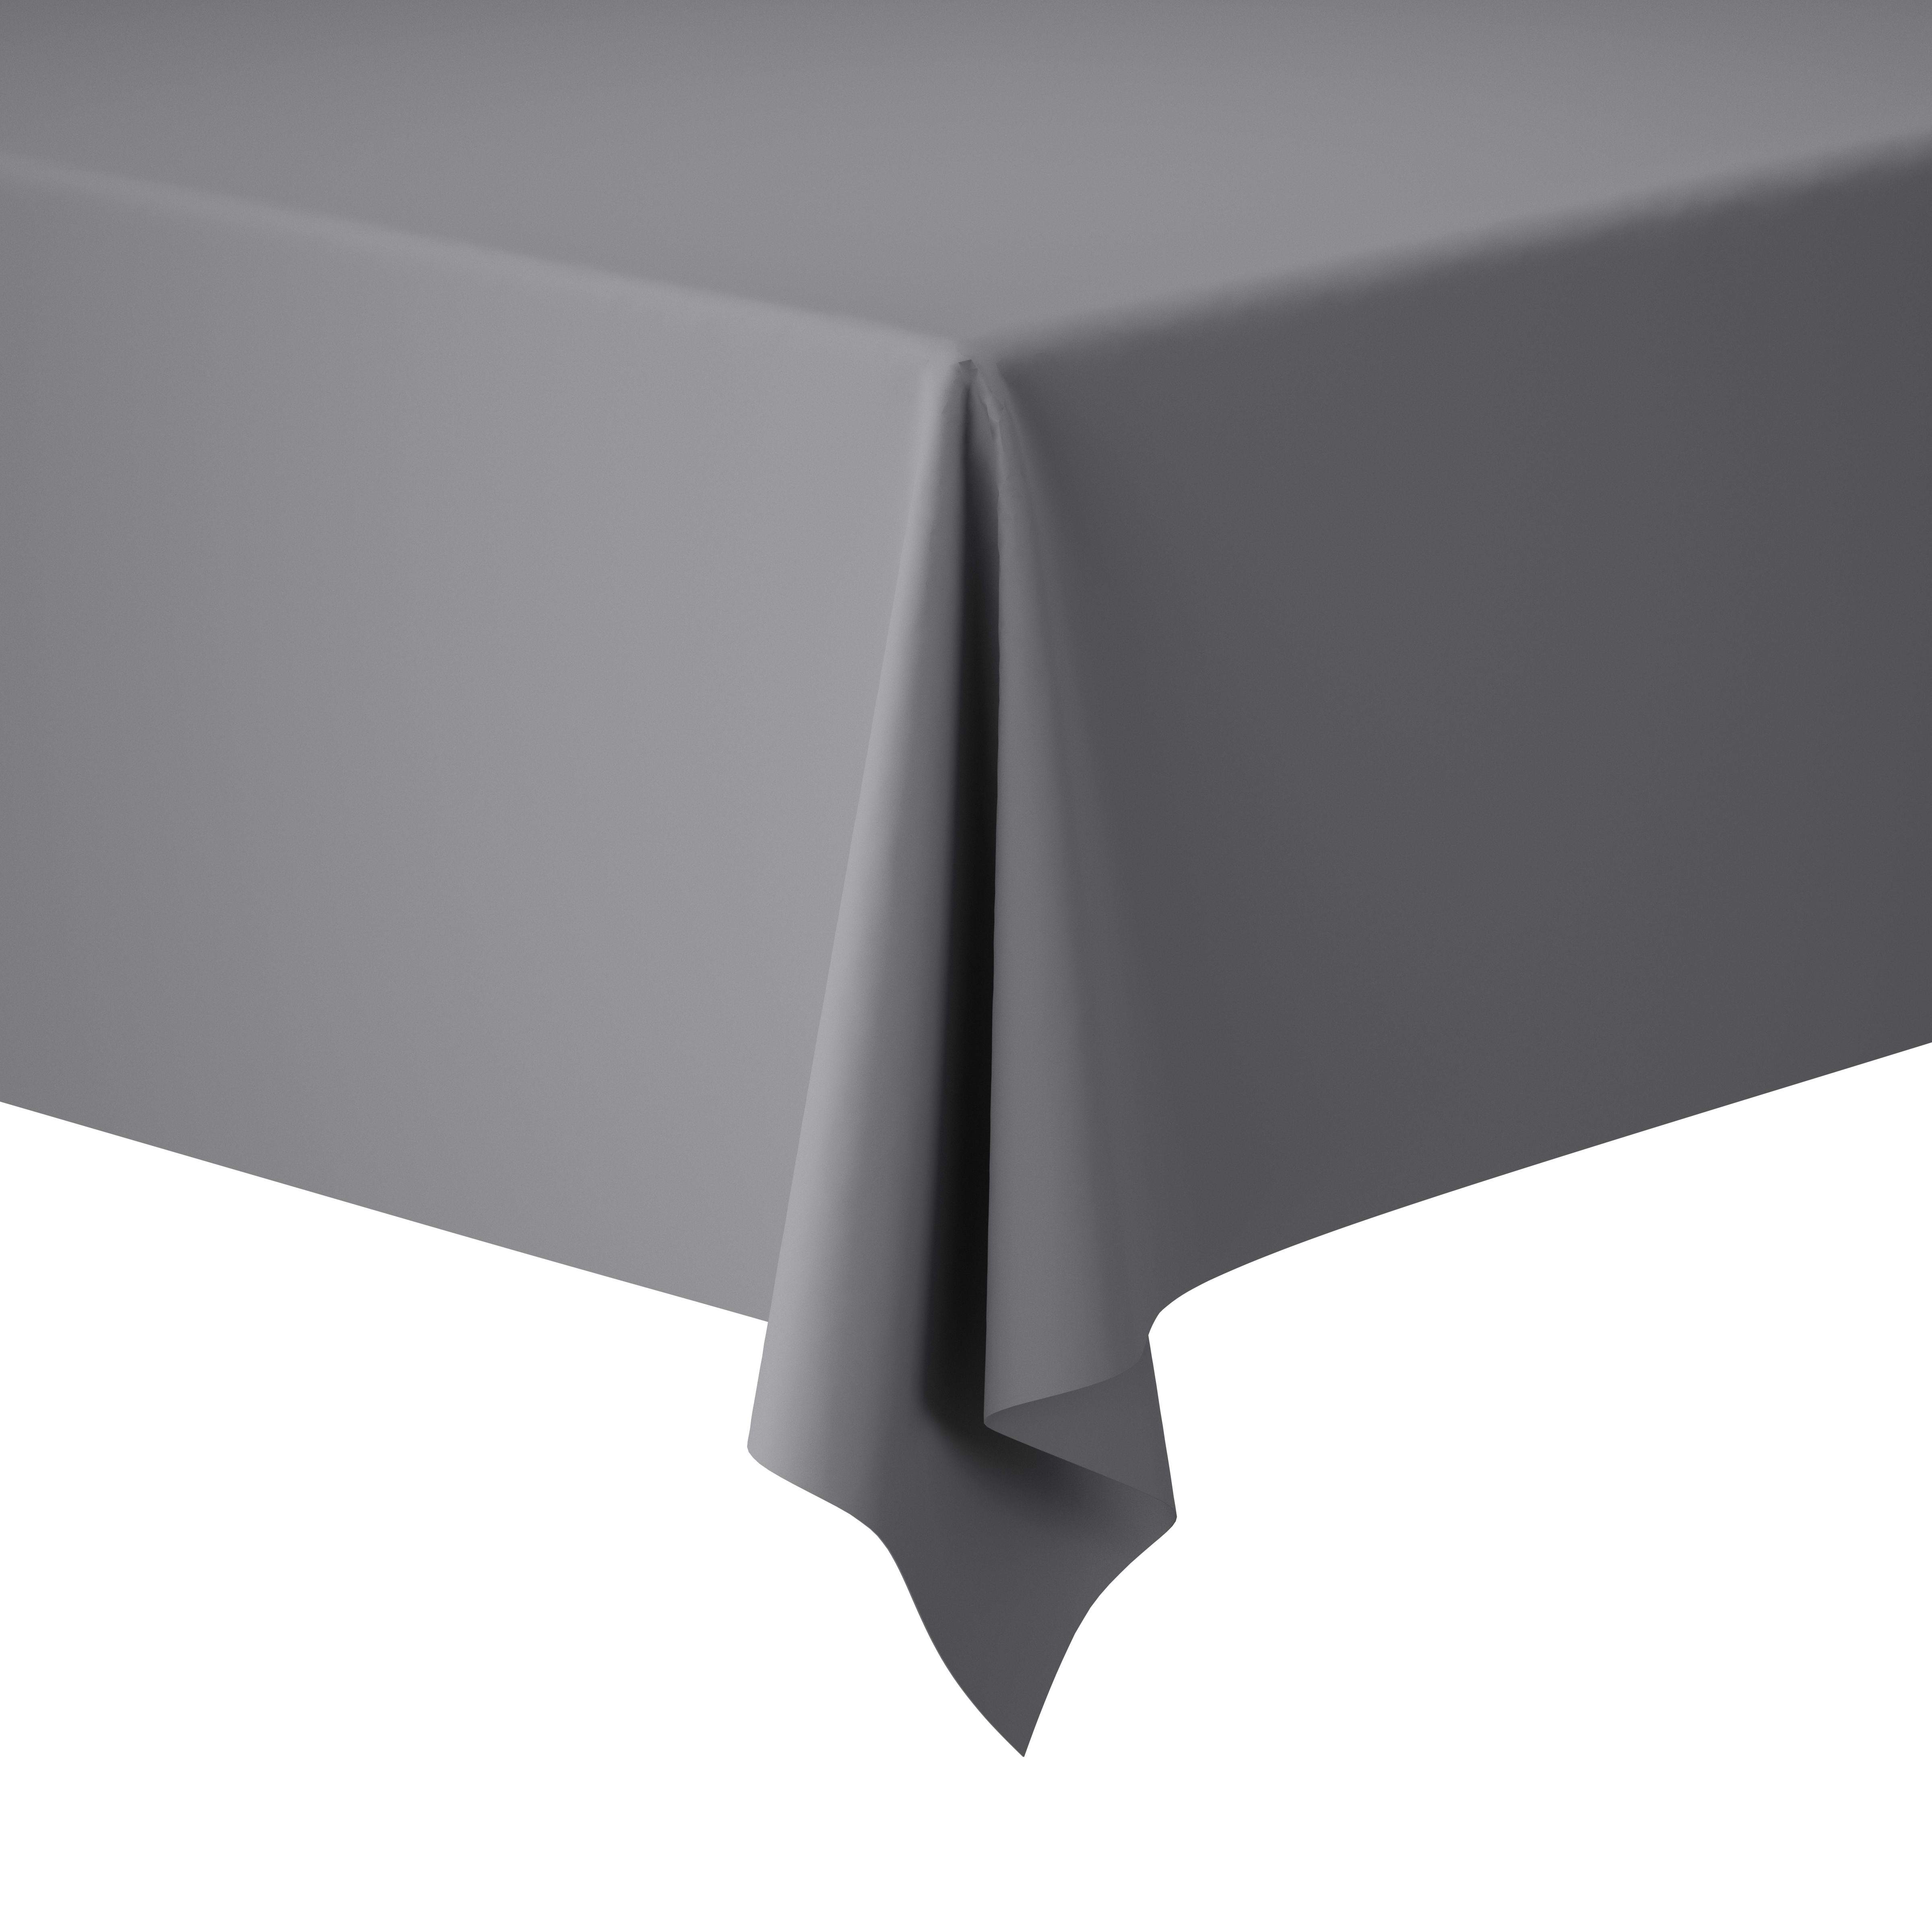 Dunicel®-Tischdeckenrolle 1,18 x 25 m Granite Grey, 2 Stk/Krt (2 x 1 Stk) |  Duni Group Deutschland